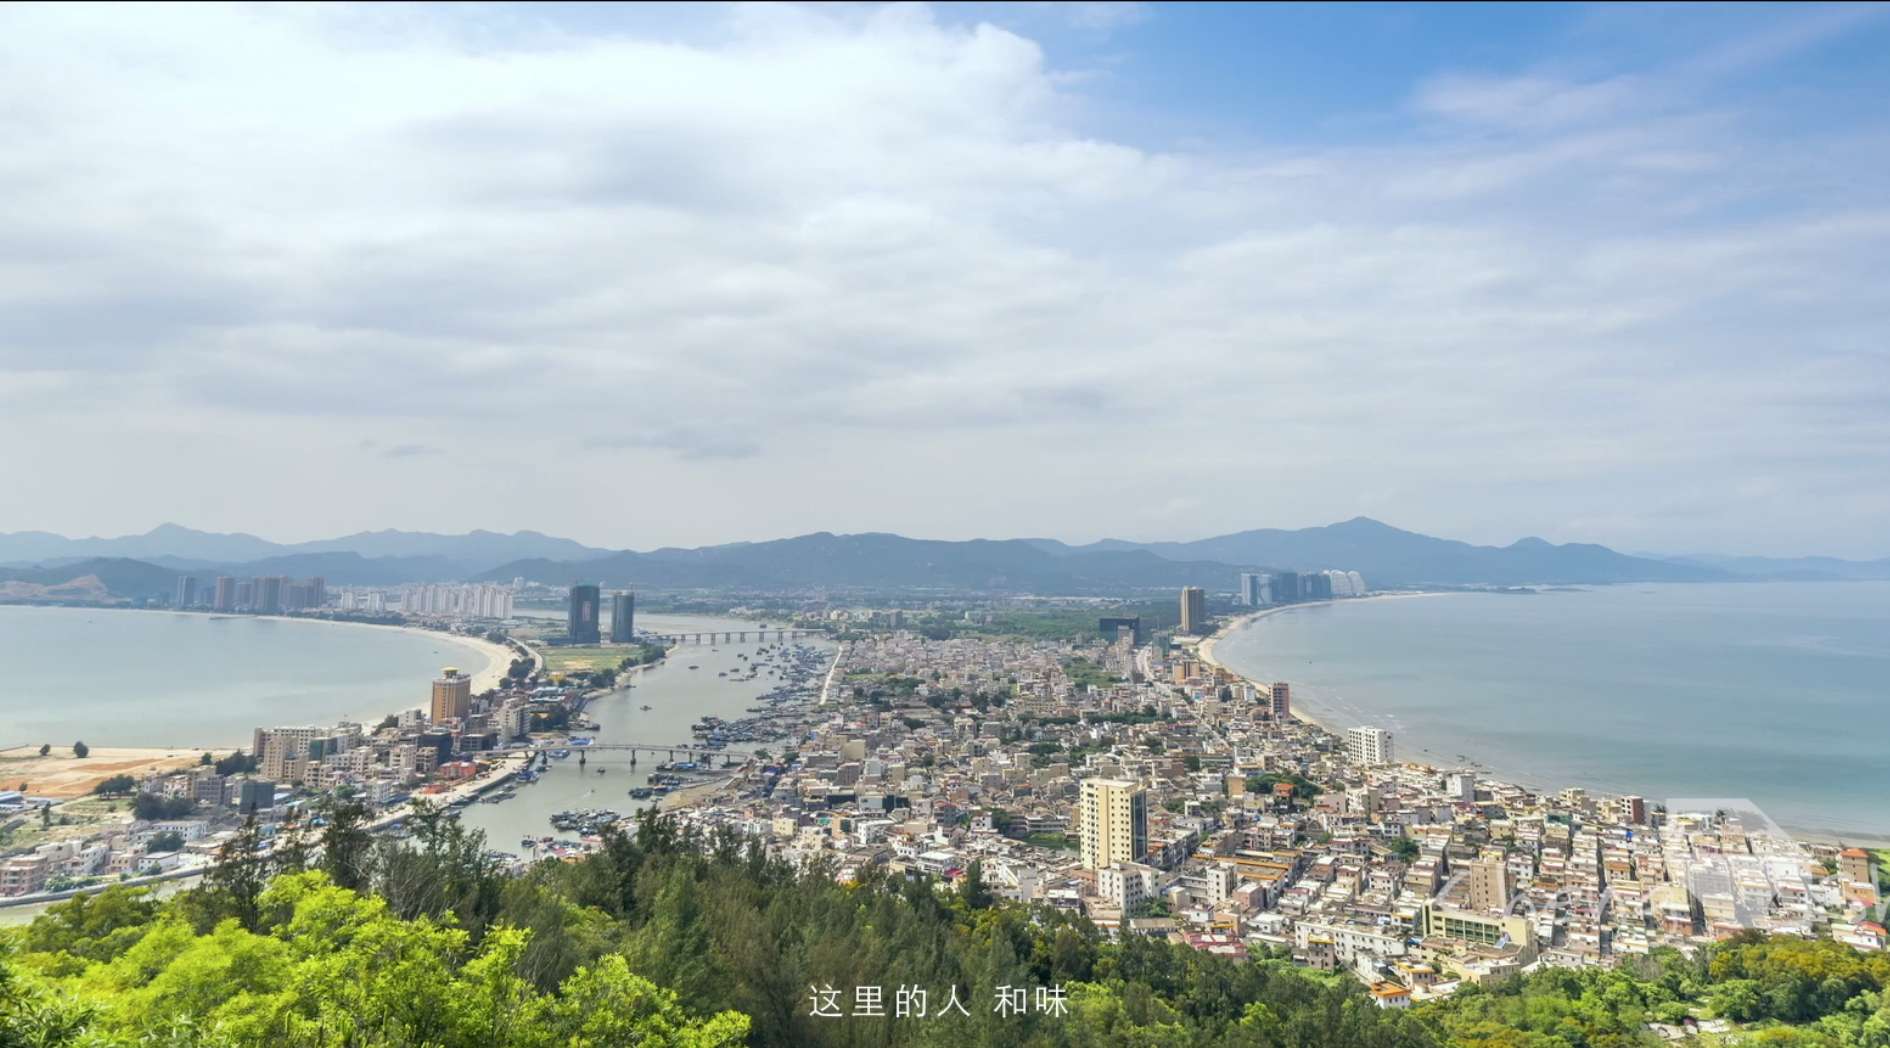 【形象】惠州市旅游宣传片-《一切精彩惠发生》5分钟完整版